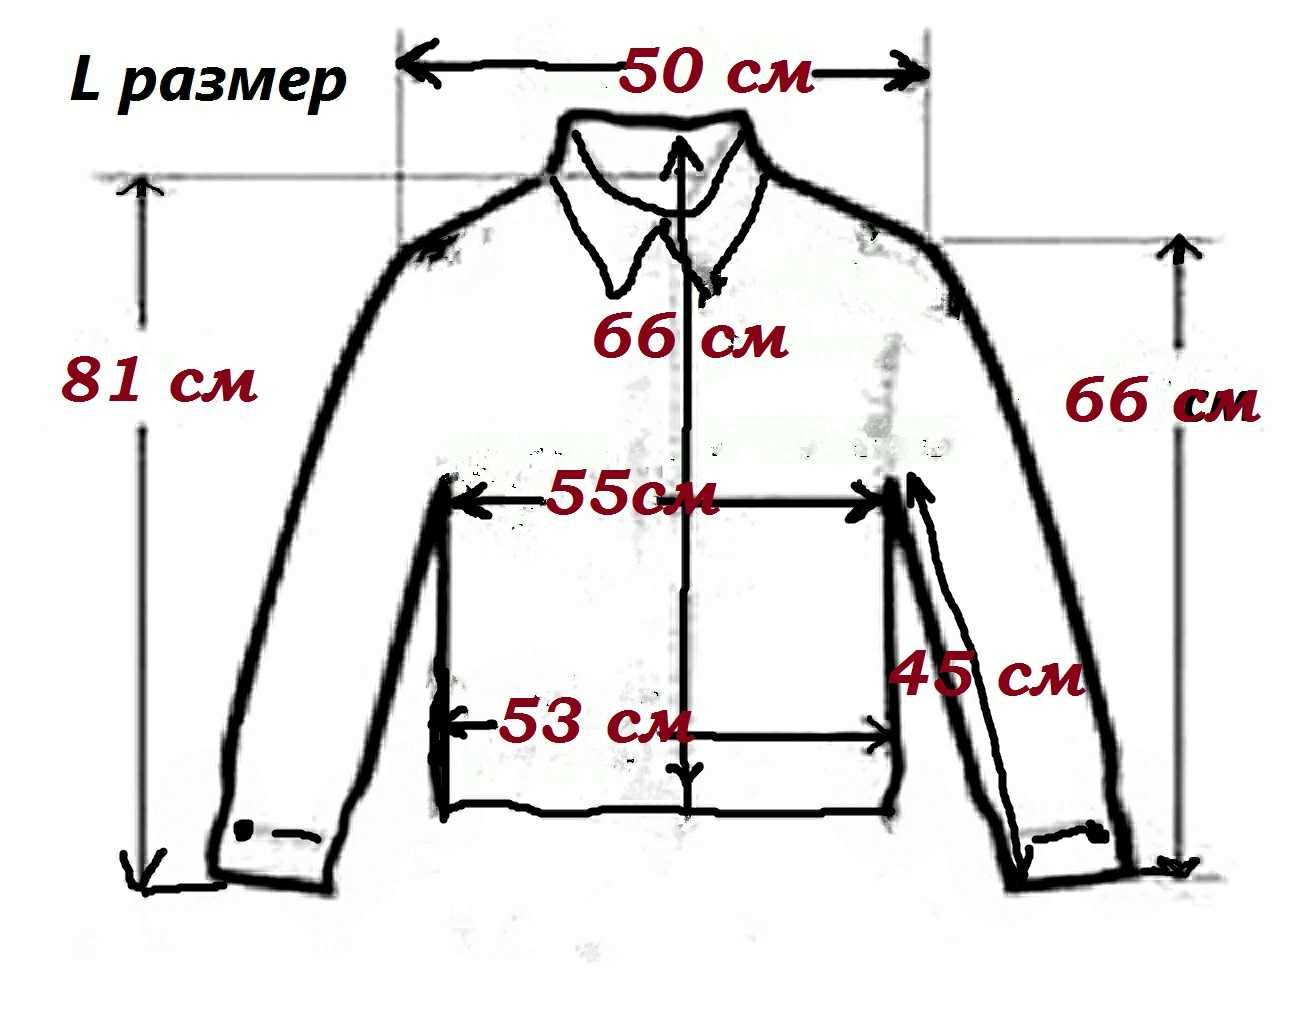 Кожаная куртка ZARA Испания натуральная кожа 50-52 (L) размер